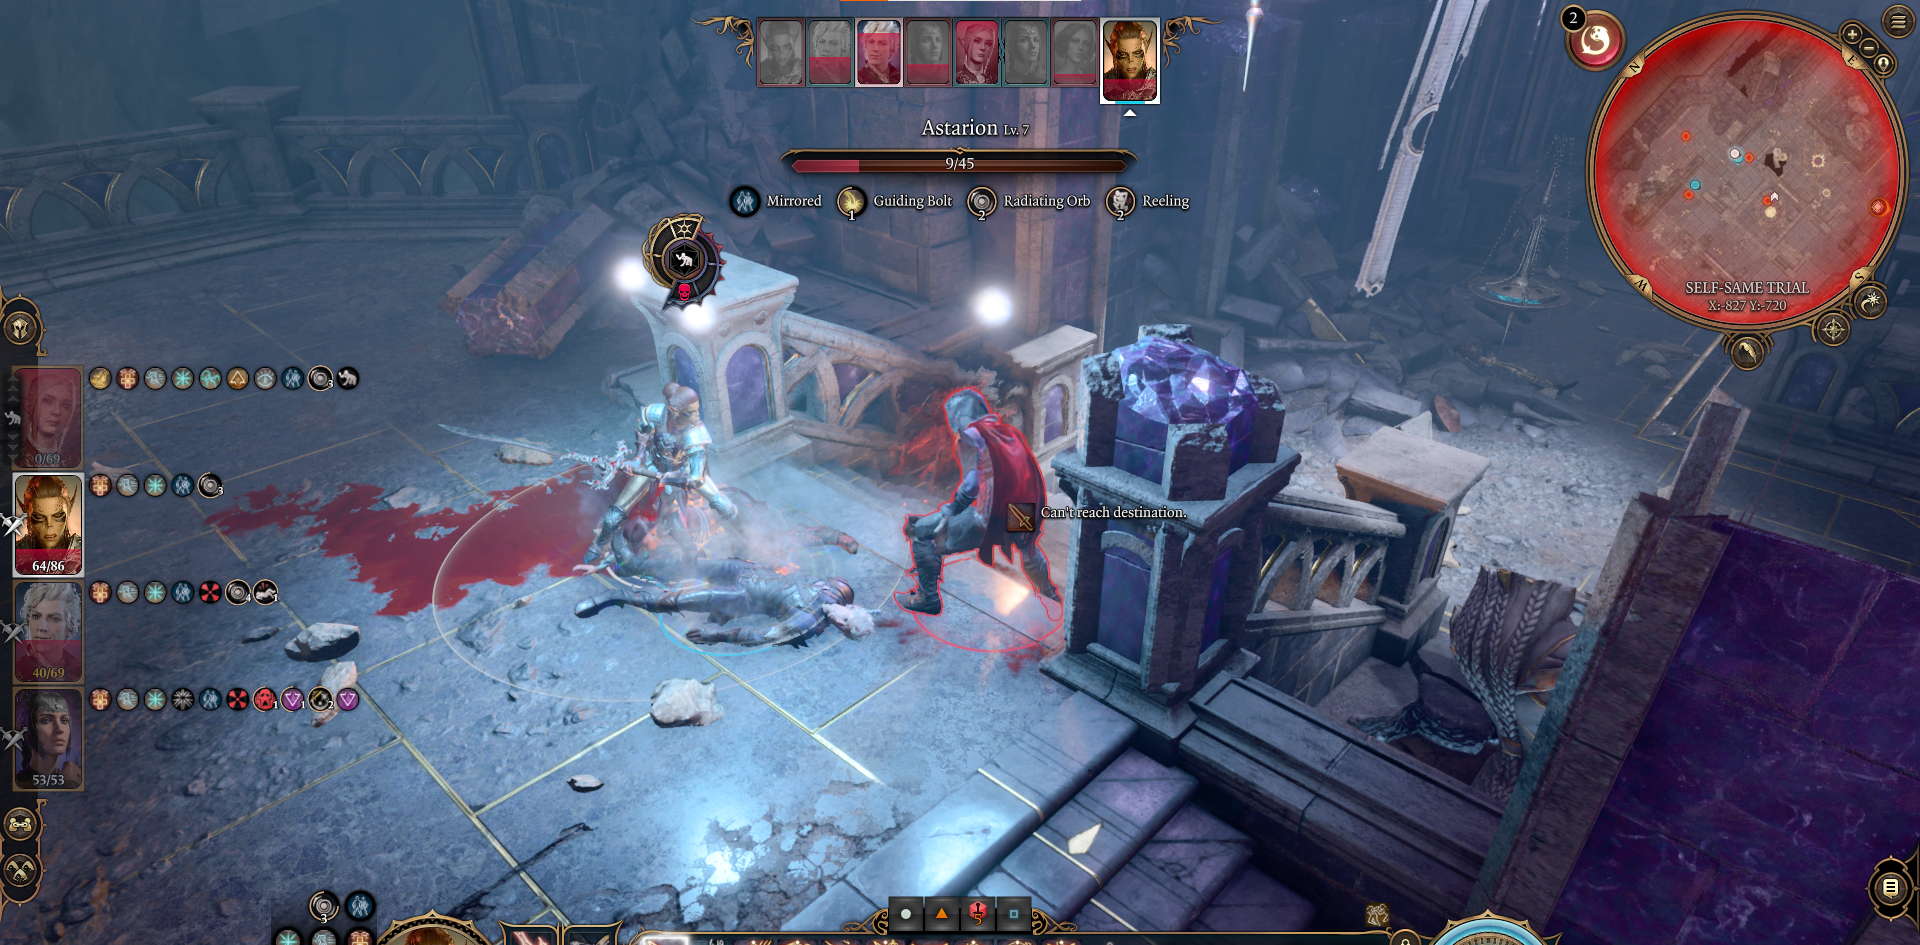 A screenshot of the Fighter Class Lae'zel fighting against a clone in Baldur's Gate 3.